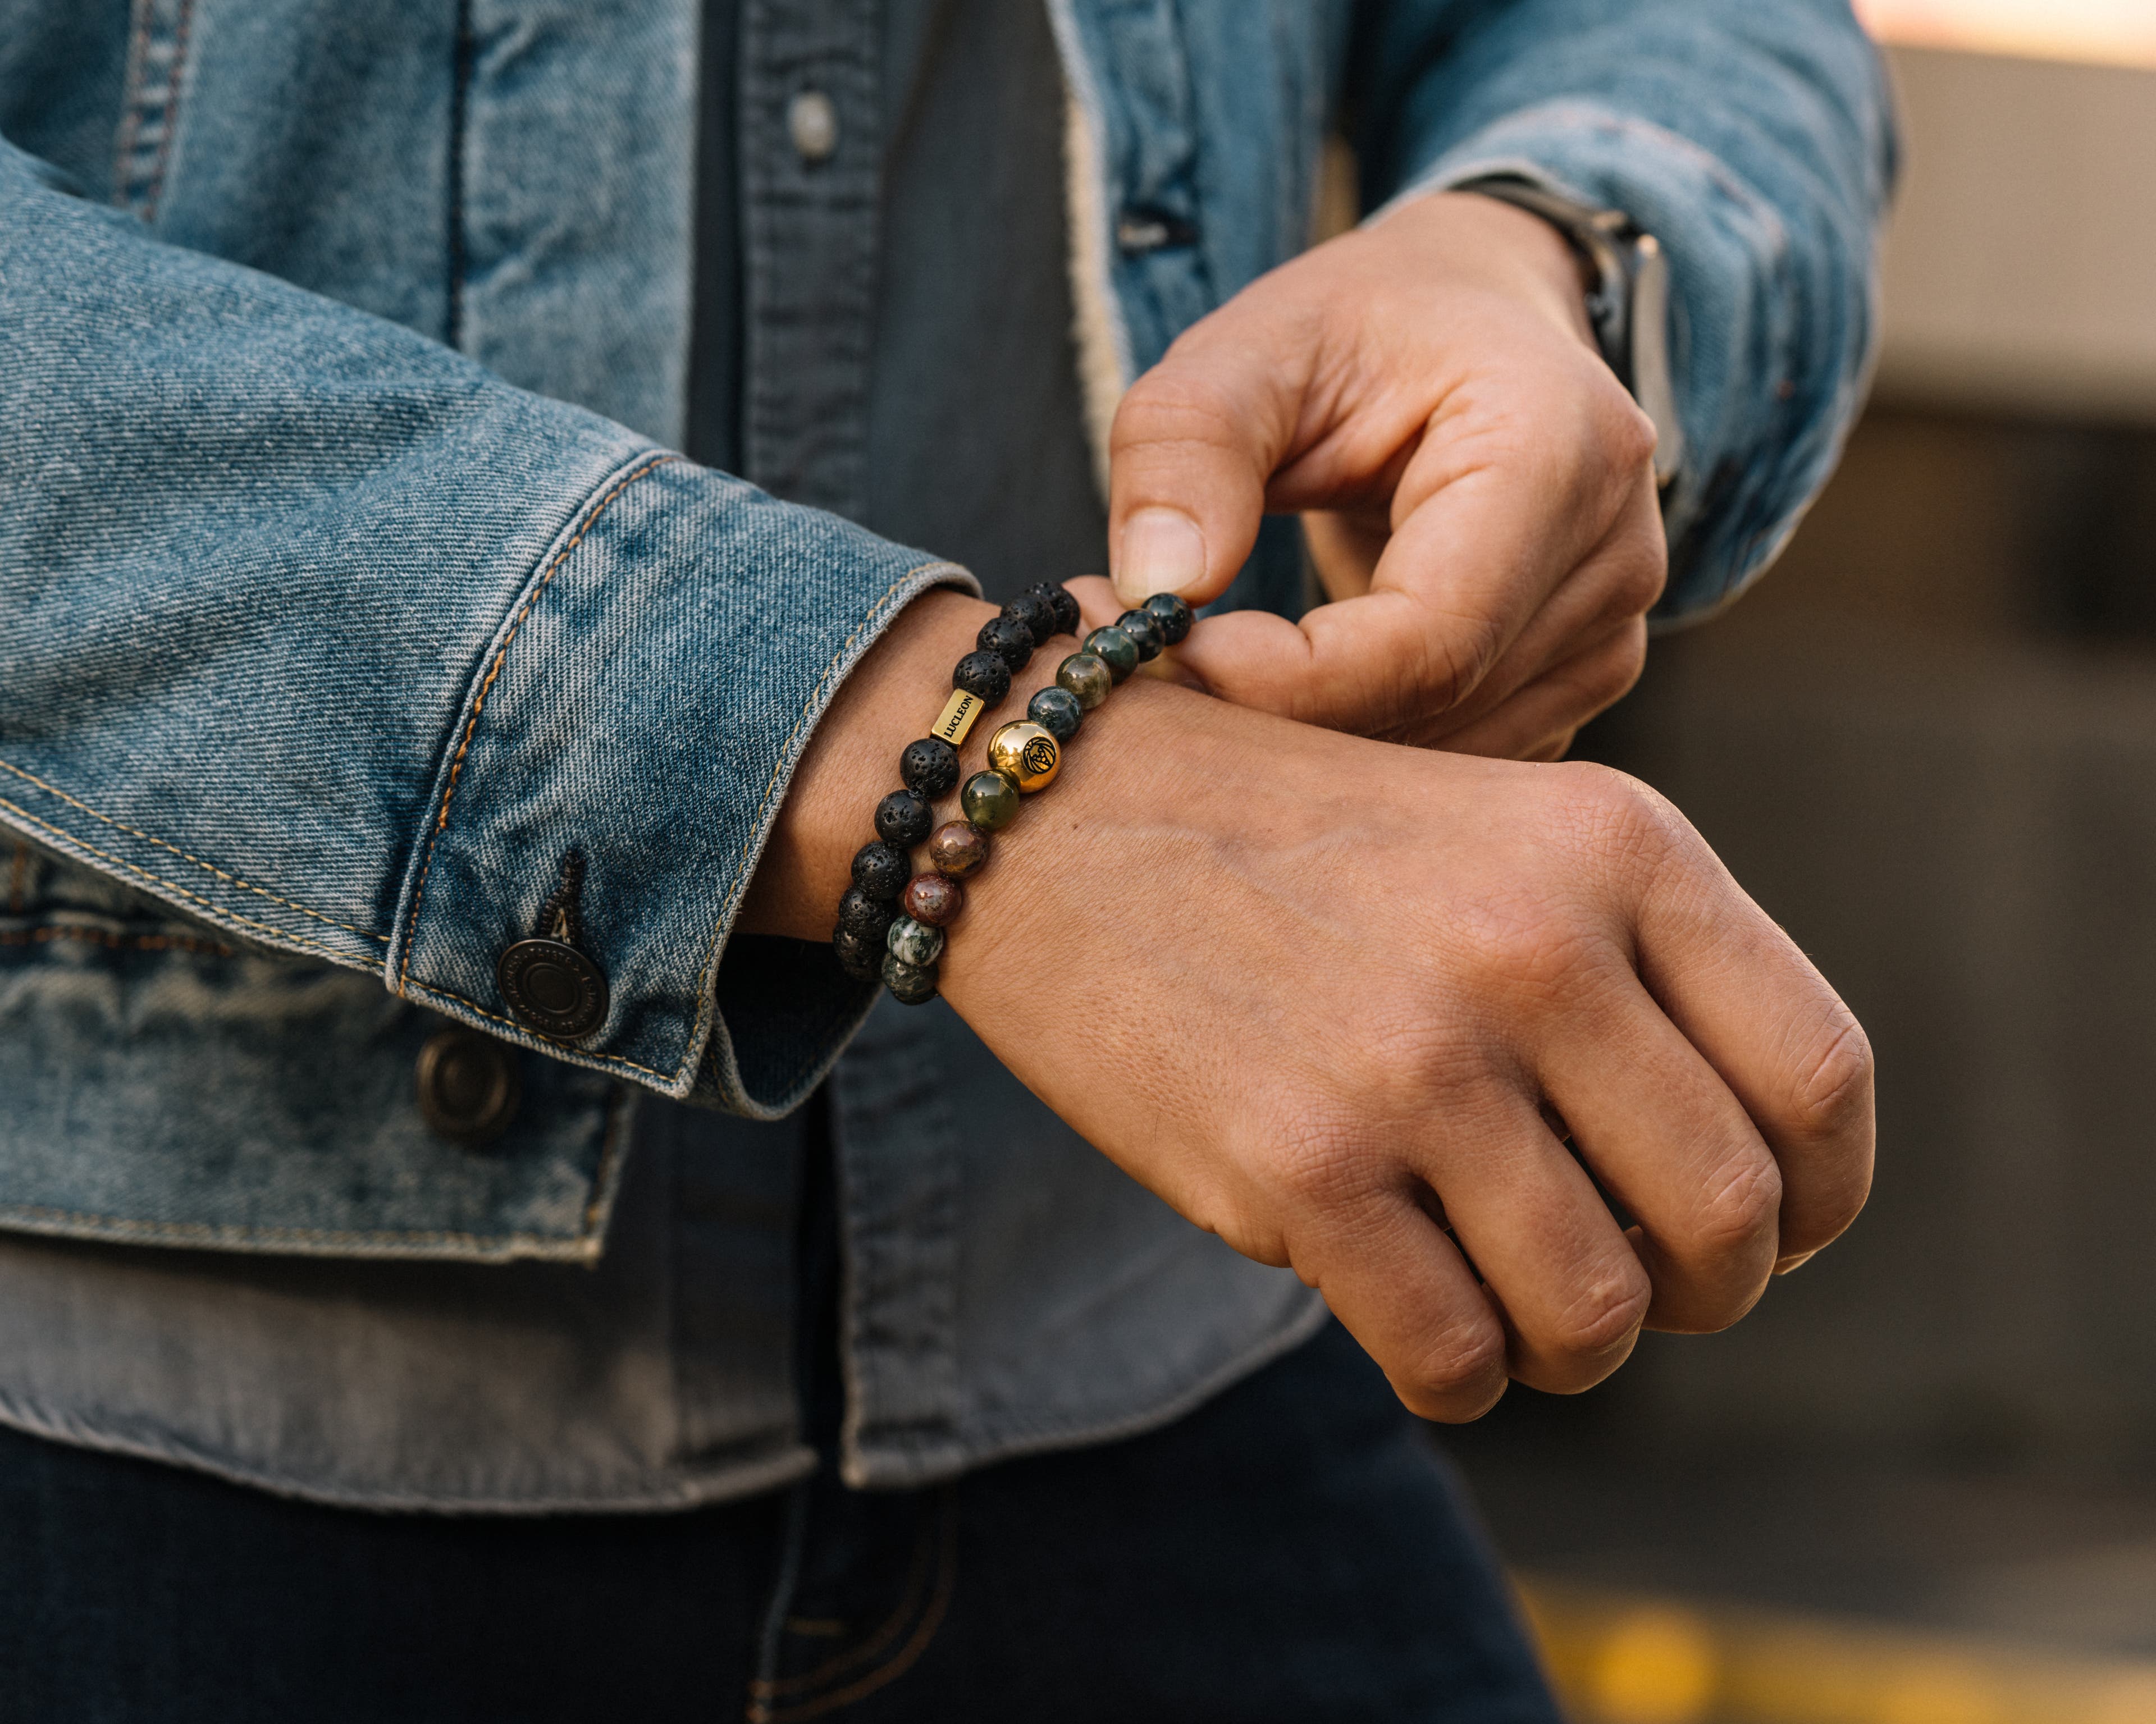  Sådan bærer du armbånd – uden at gøre for meget ud af det